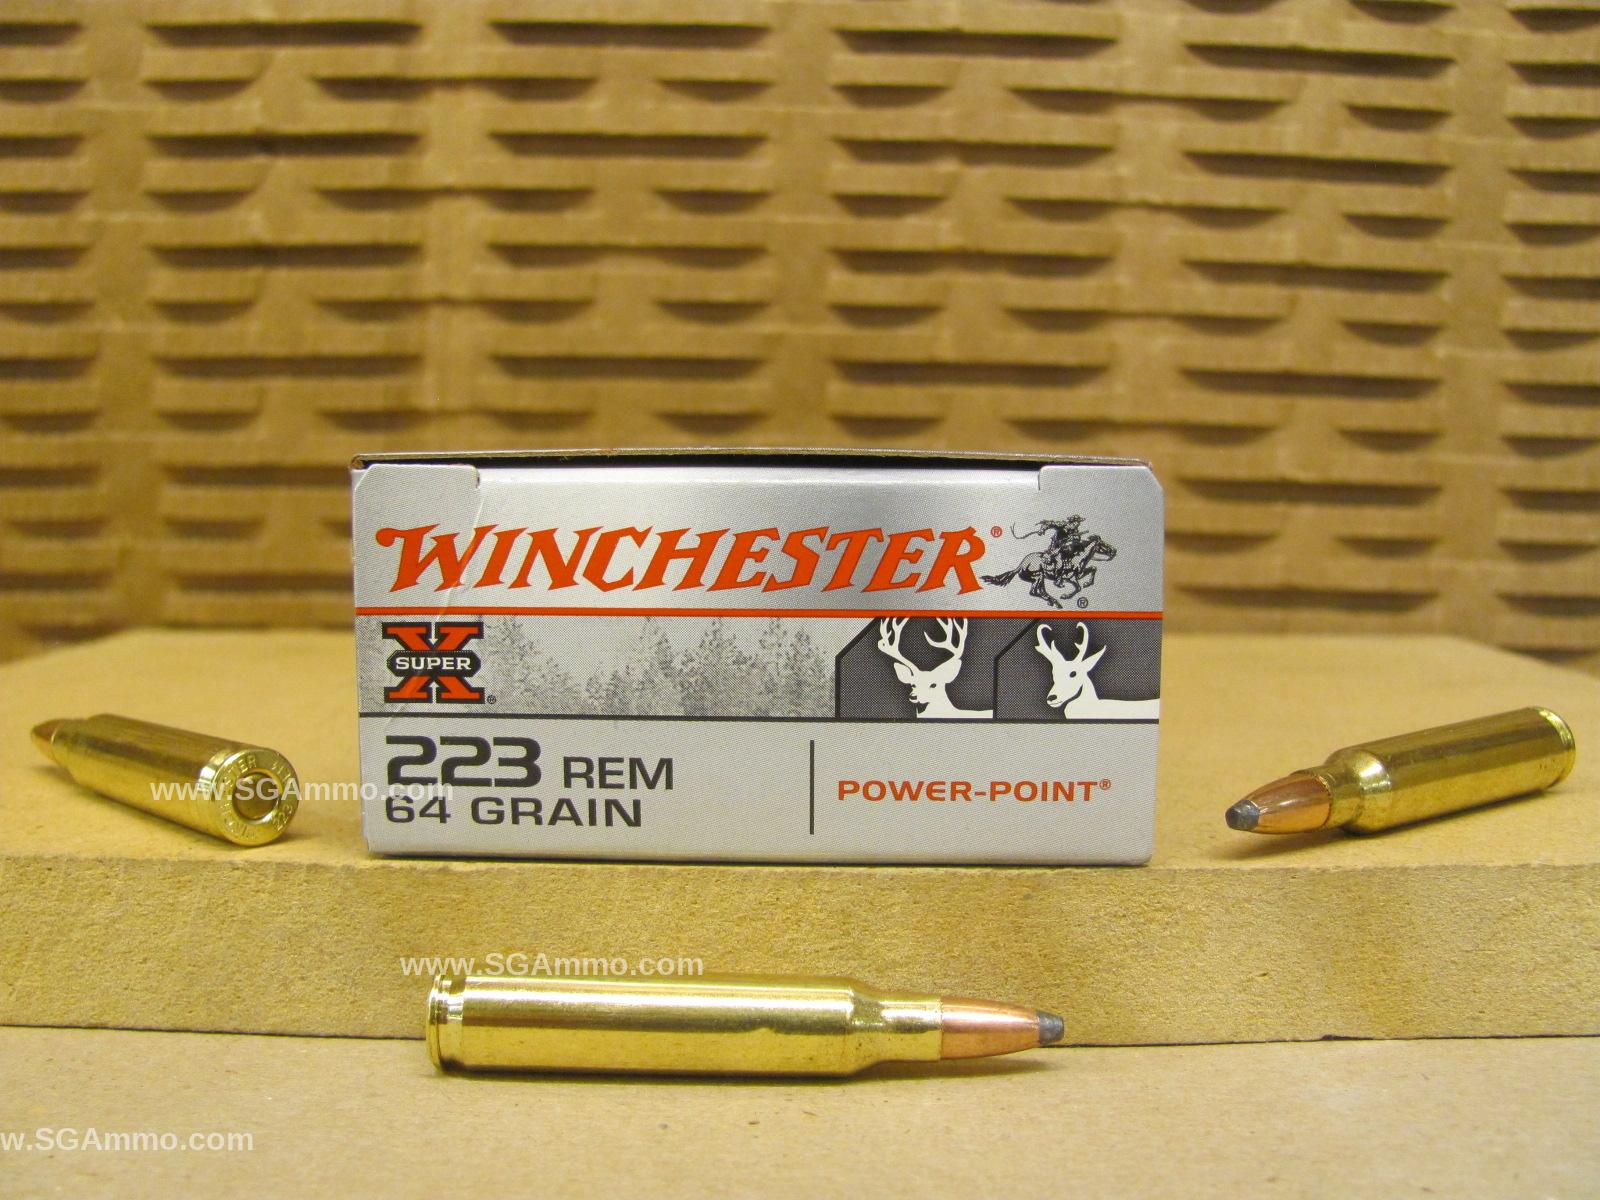 200 Round Case - 223 Remington 64 Grain Power-Point Winchester Ammo - X223R2